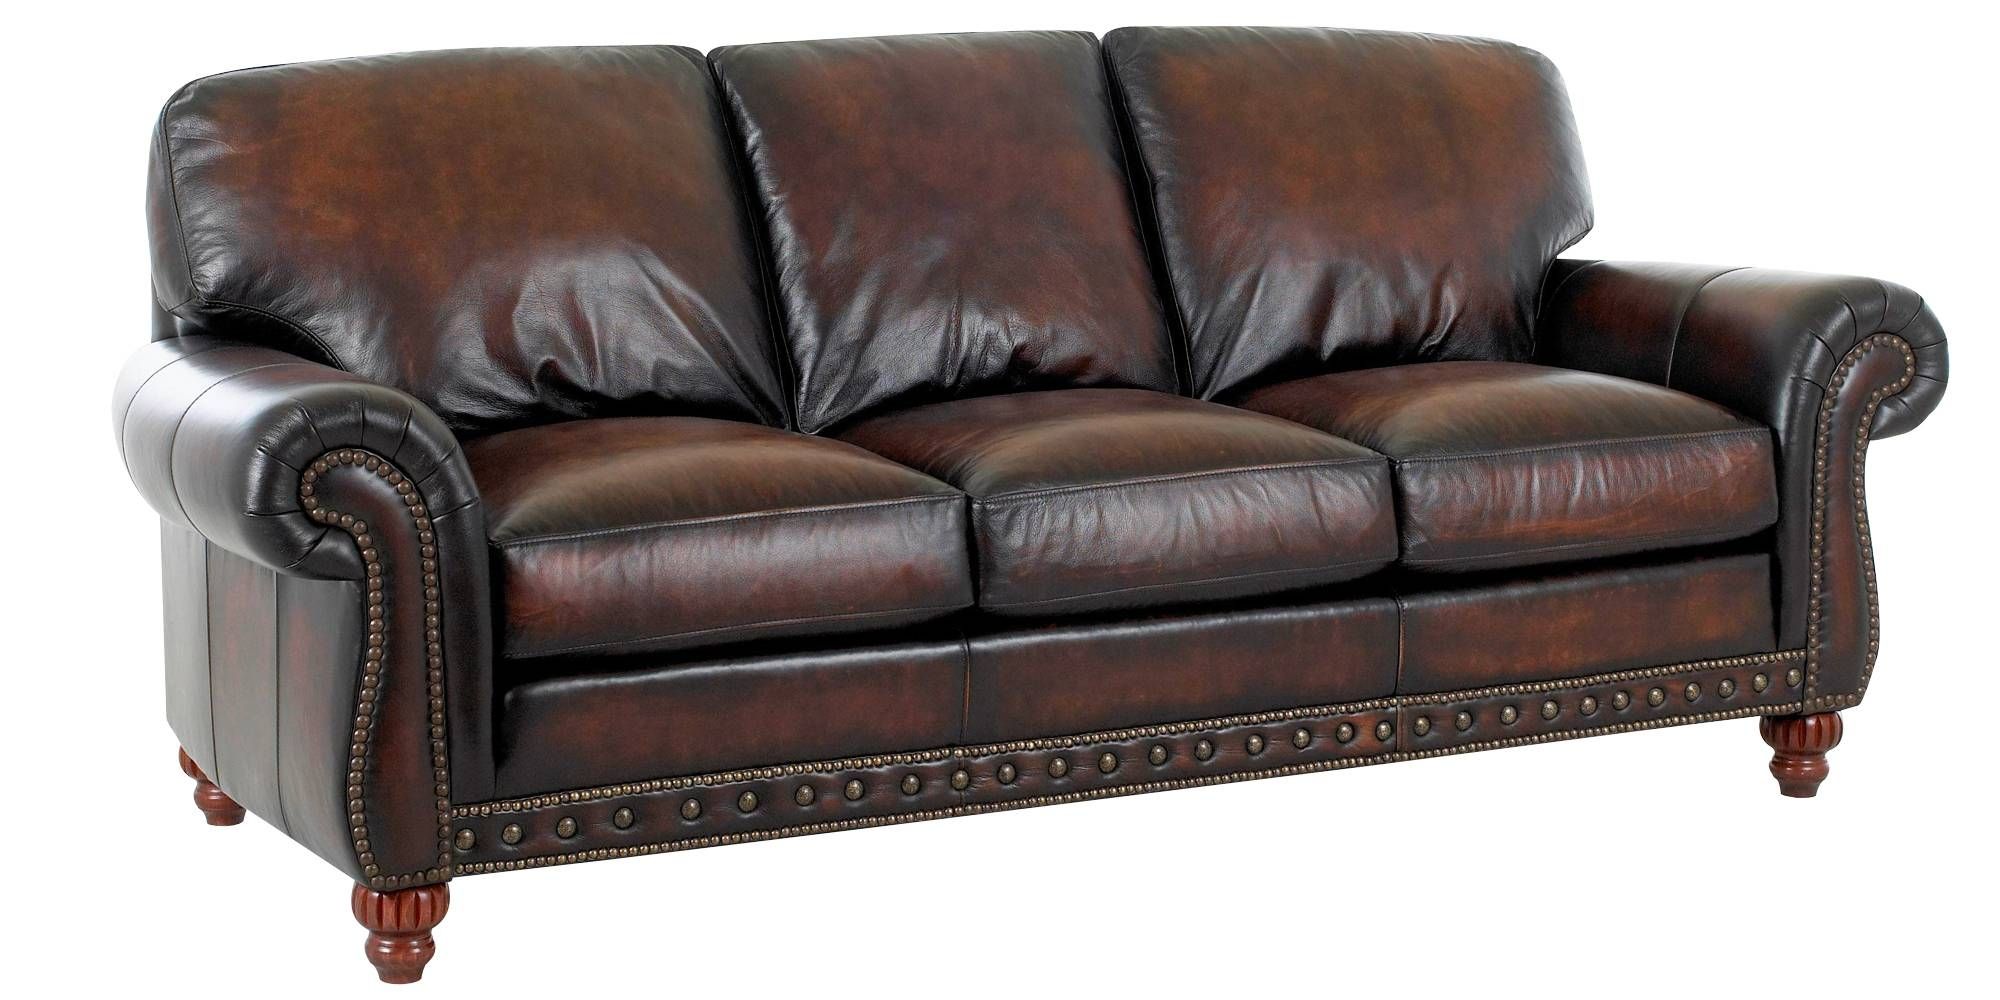 european style leather sofa